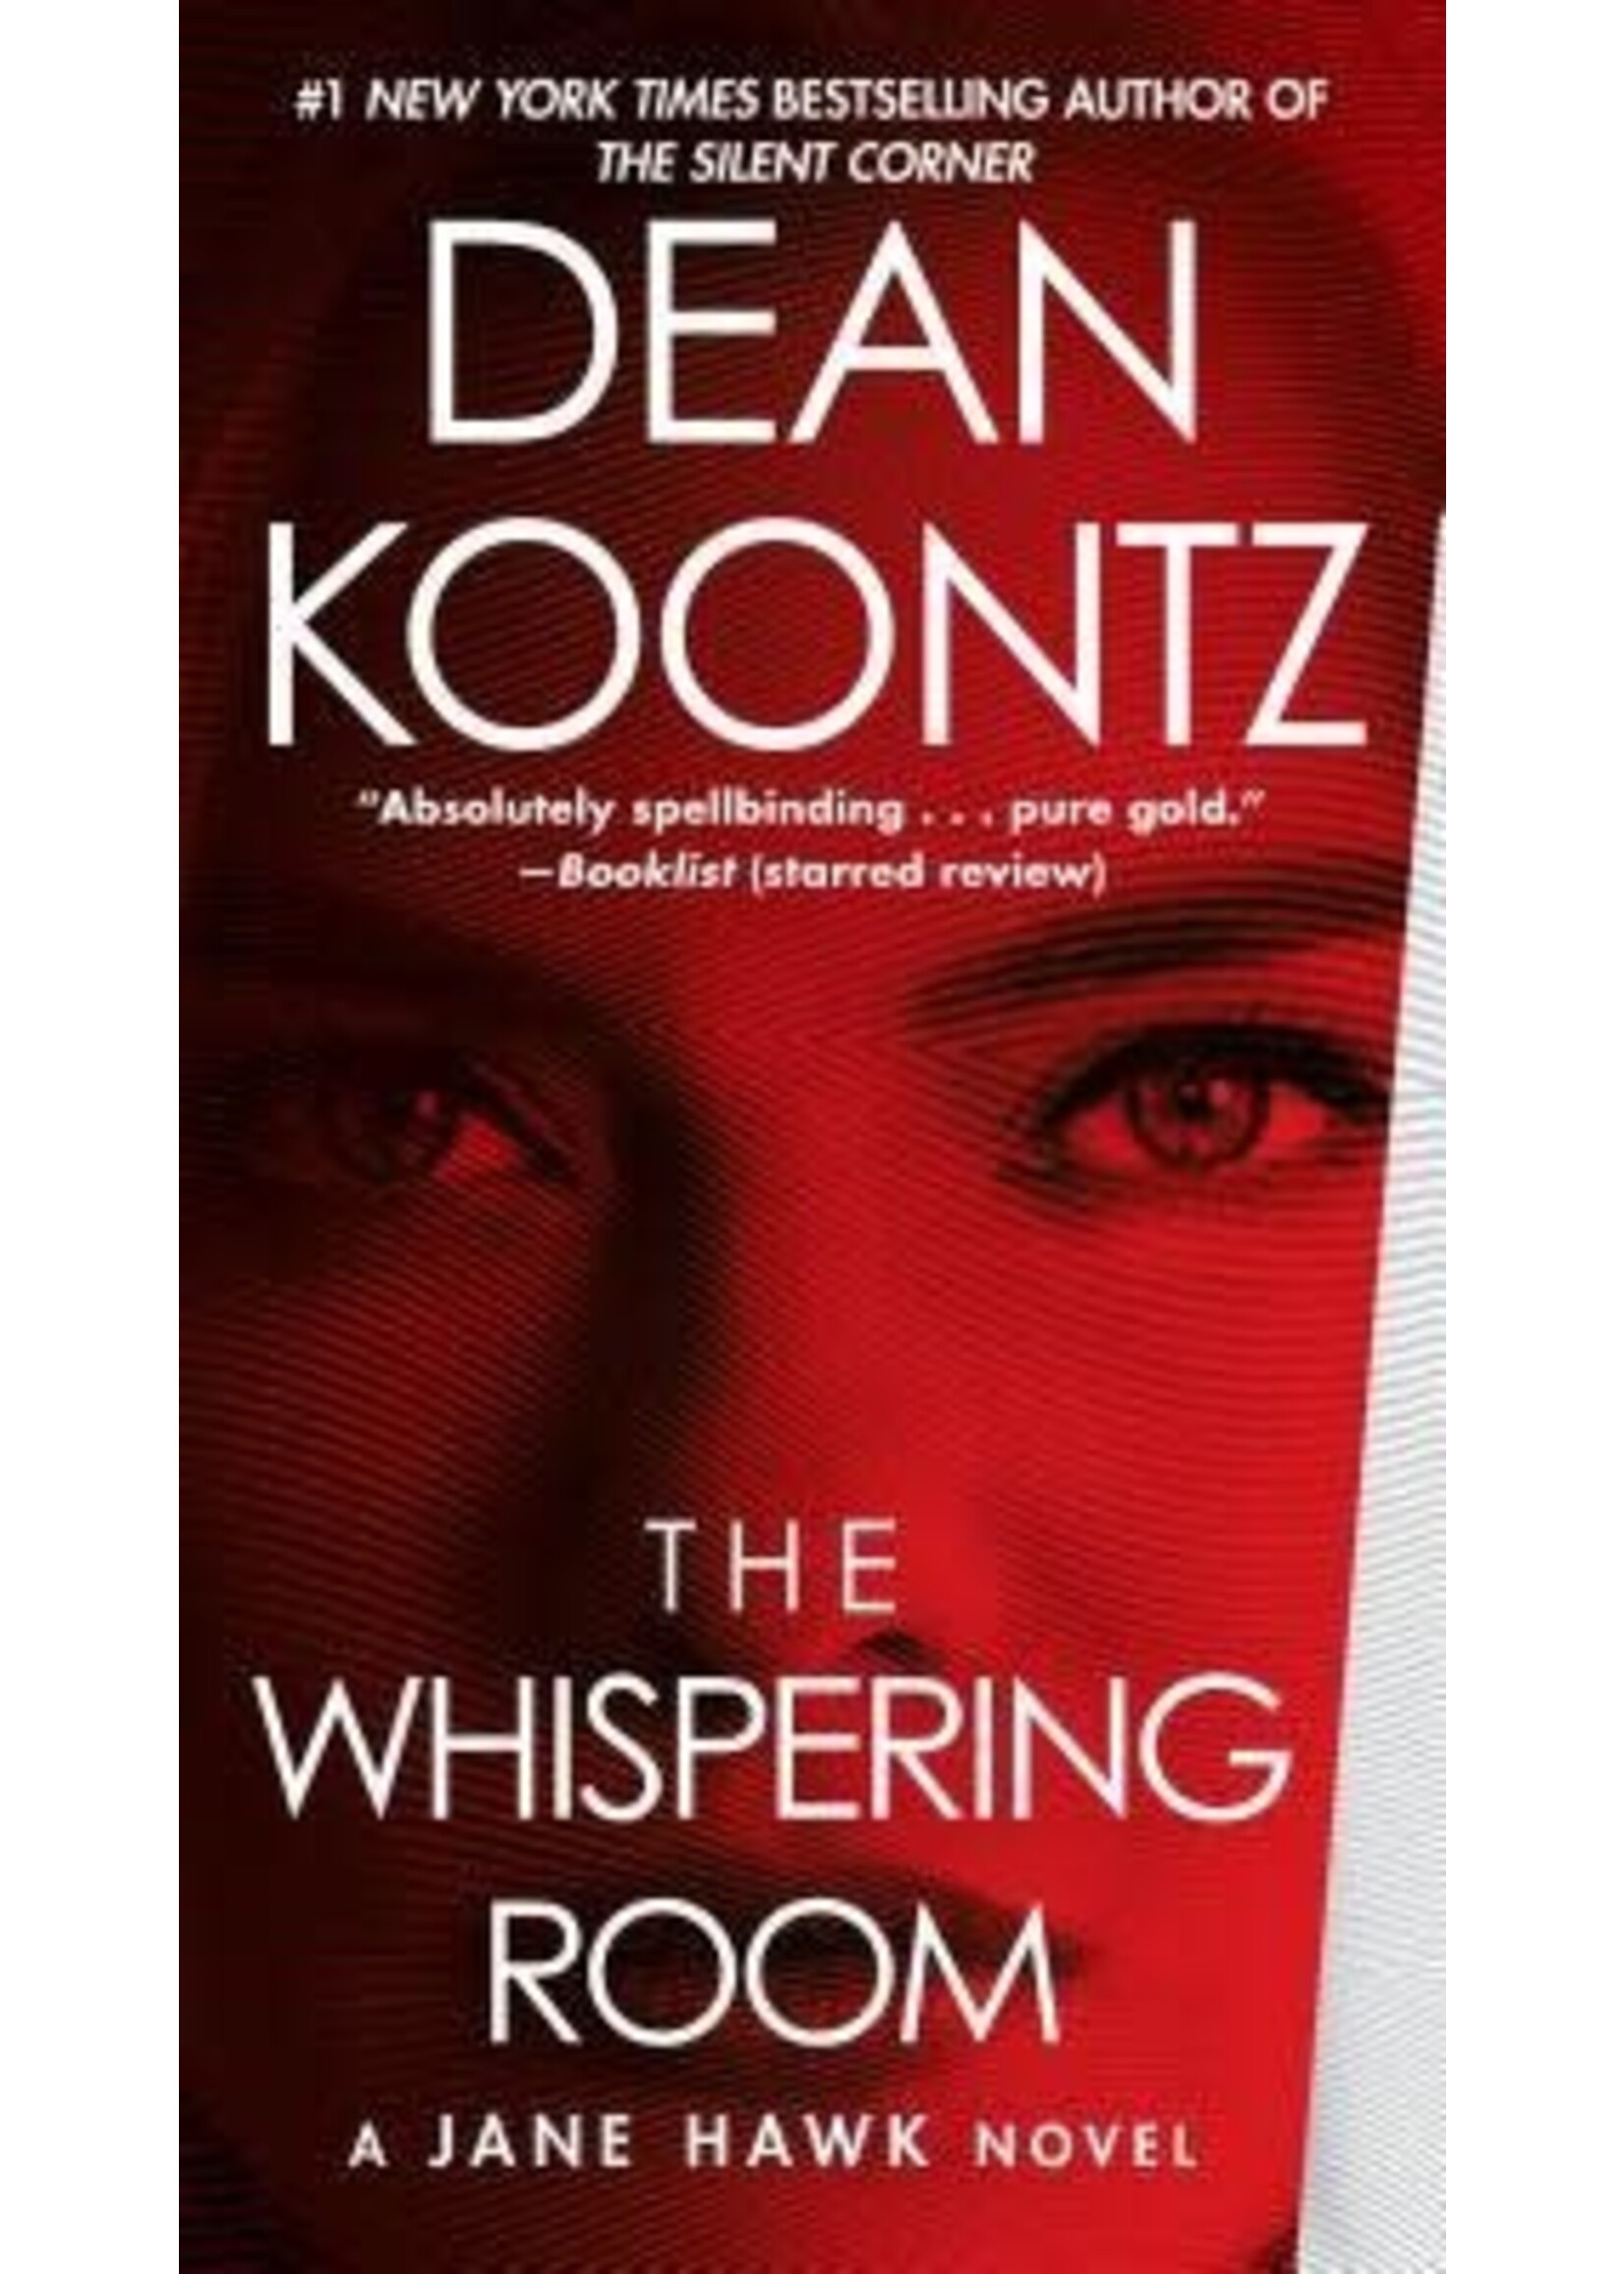 The Whispering Room (Jane Hawk #2) by Dean Koontz